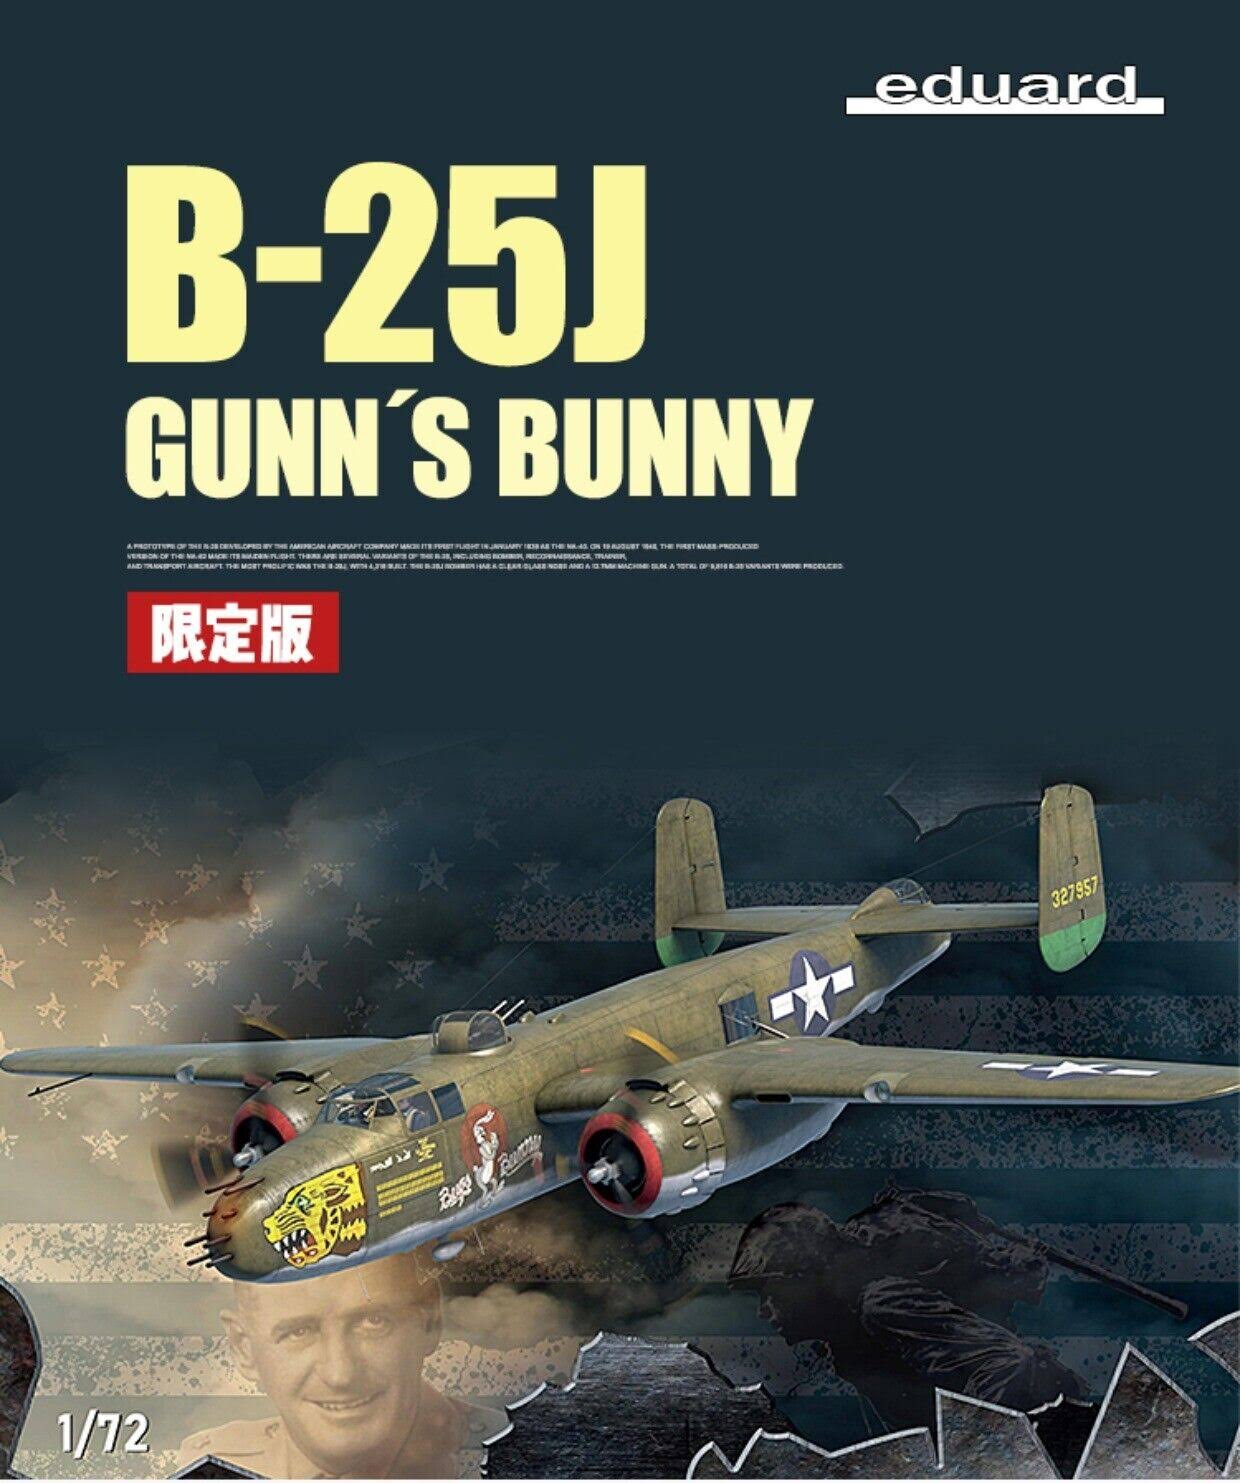 Gunn's Bunny Limited Edition